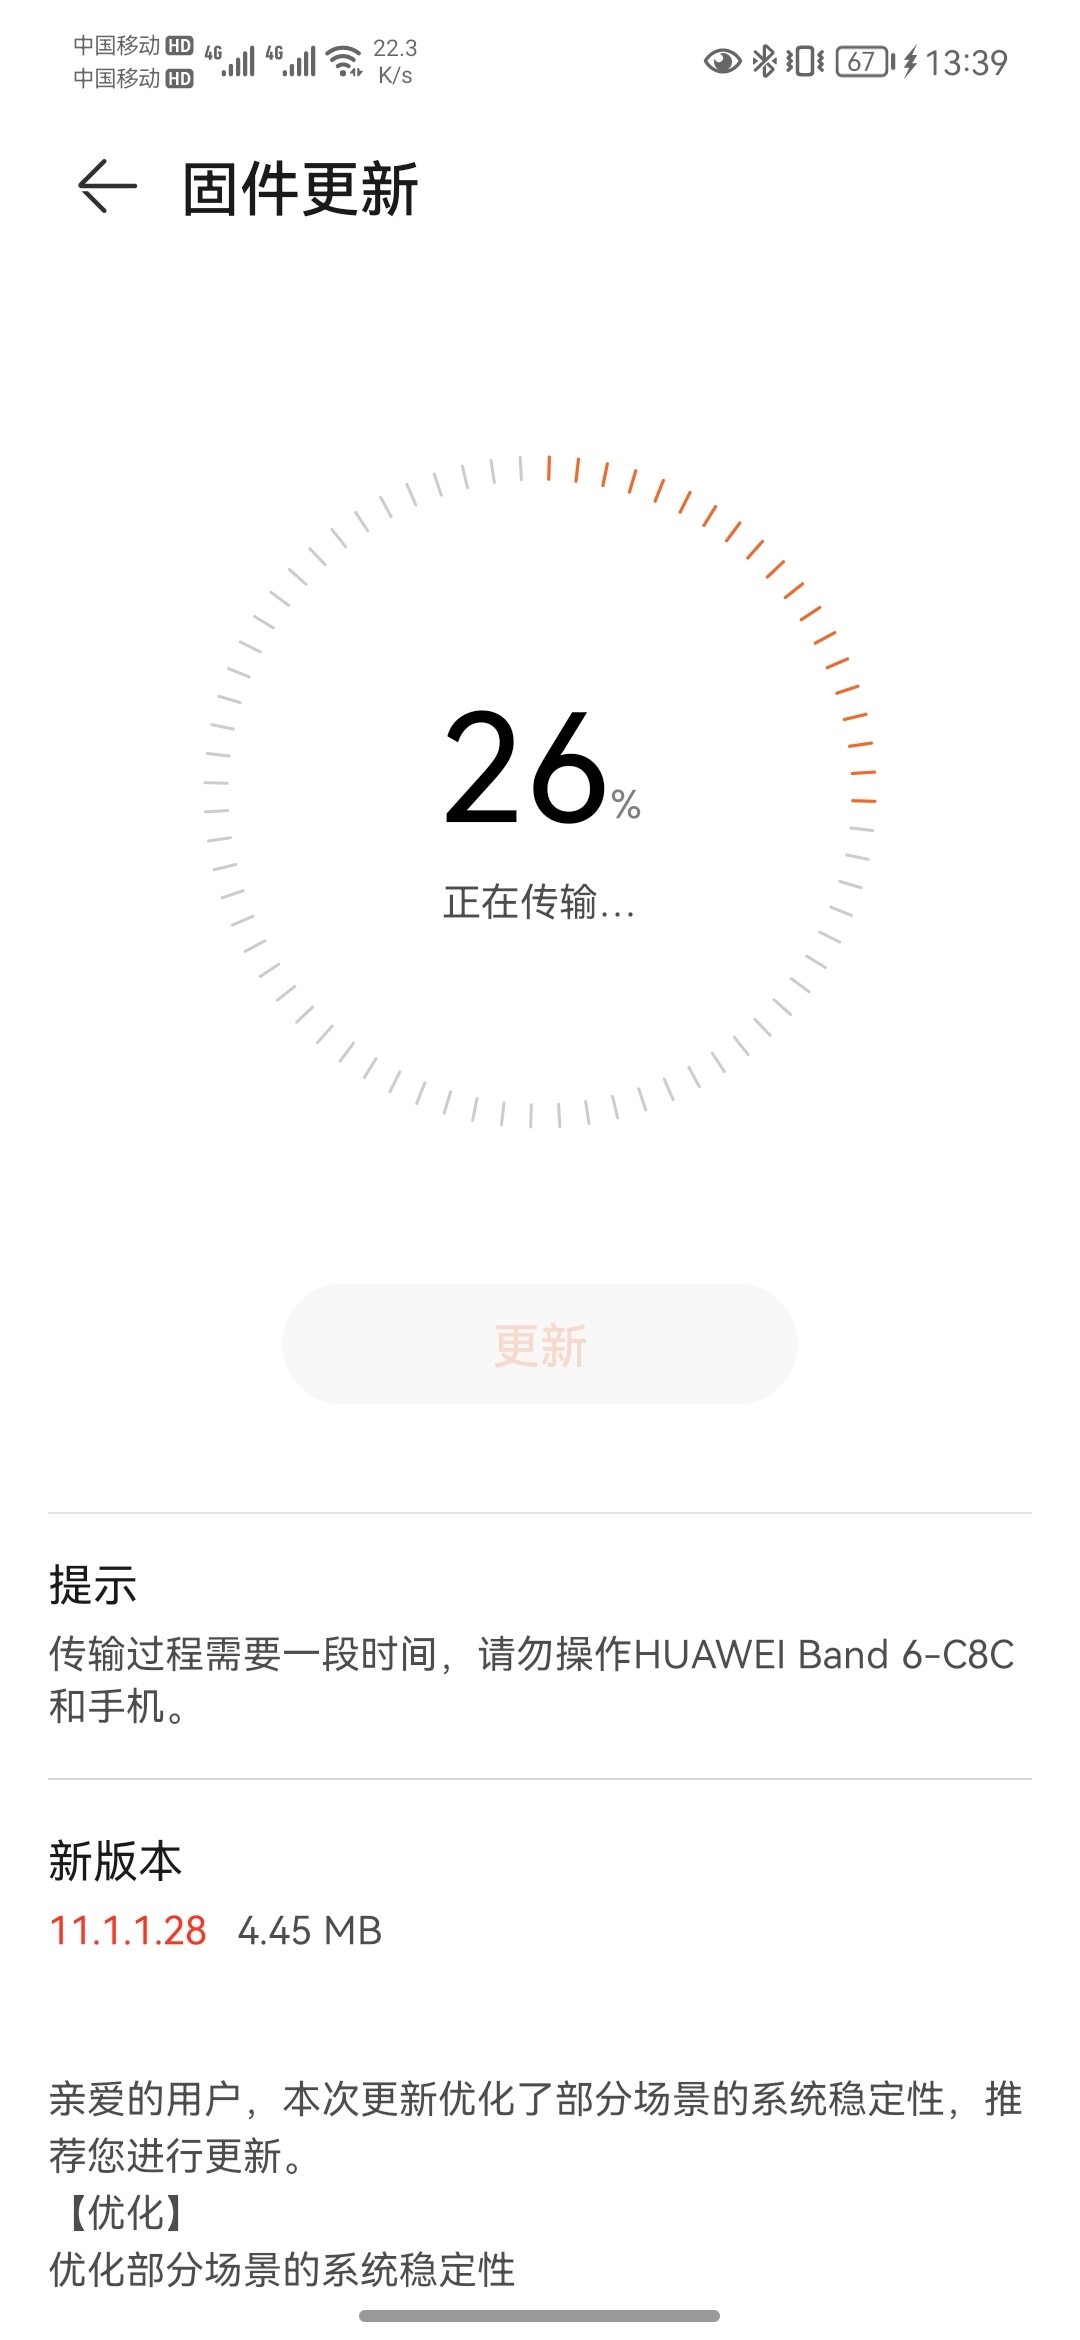 Huawei Band 6 version 11.1.1.28